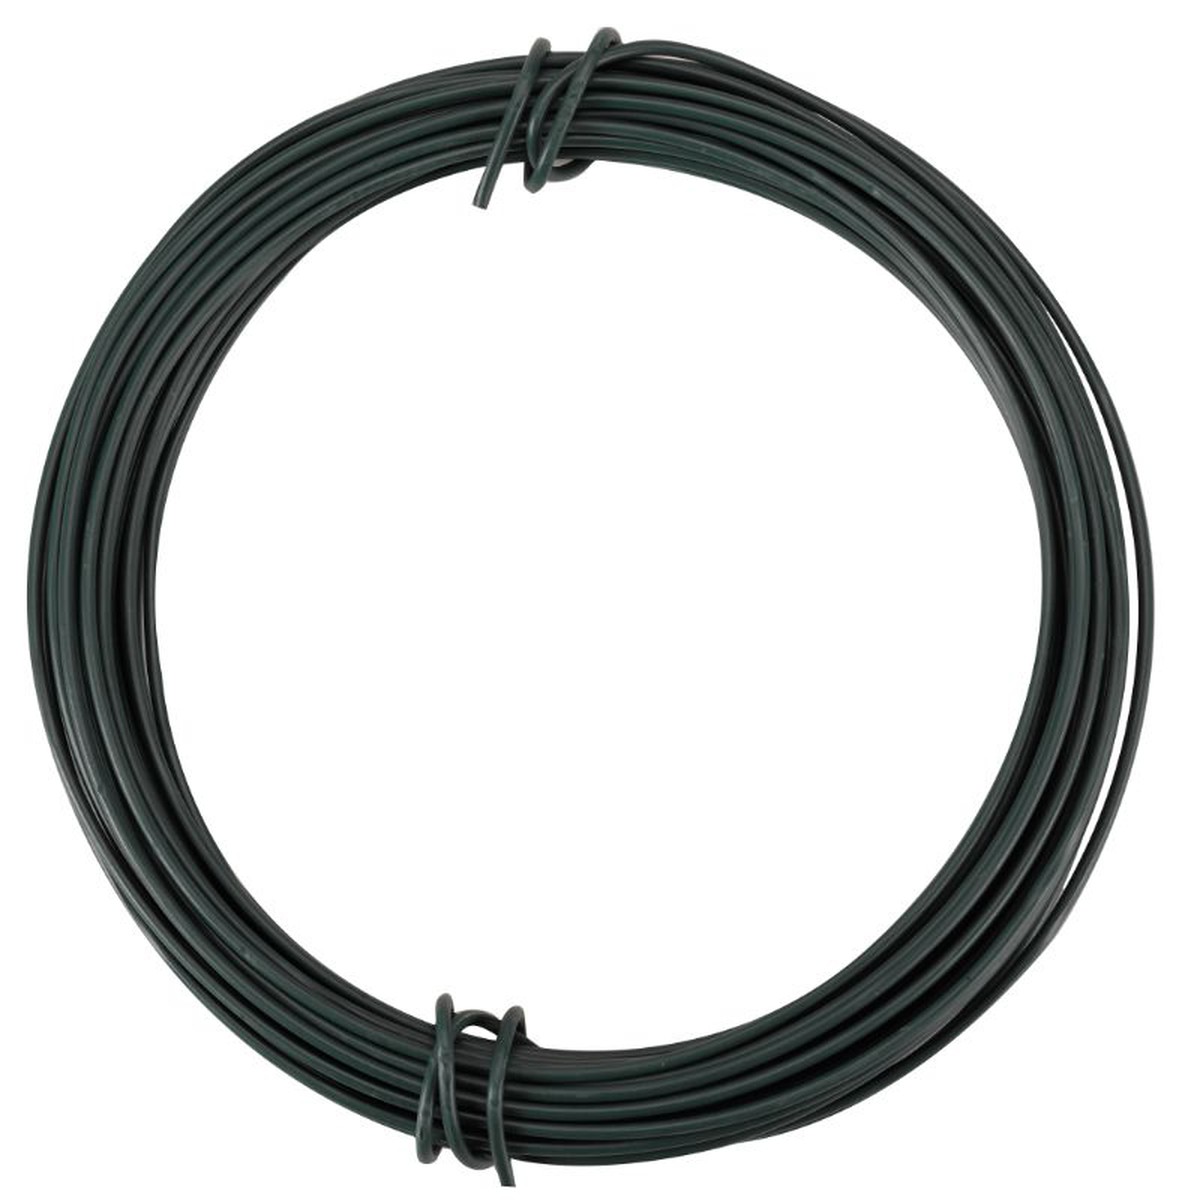   HD Wire Spool – Green 2mm x 25m  2mmx25m